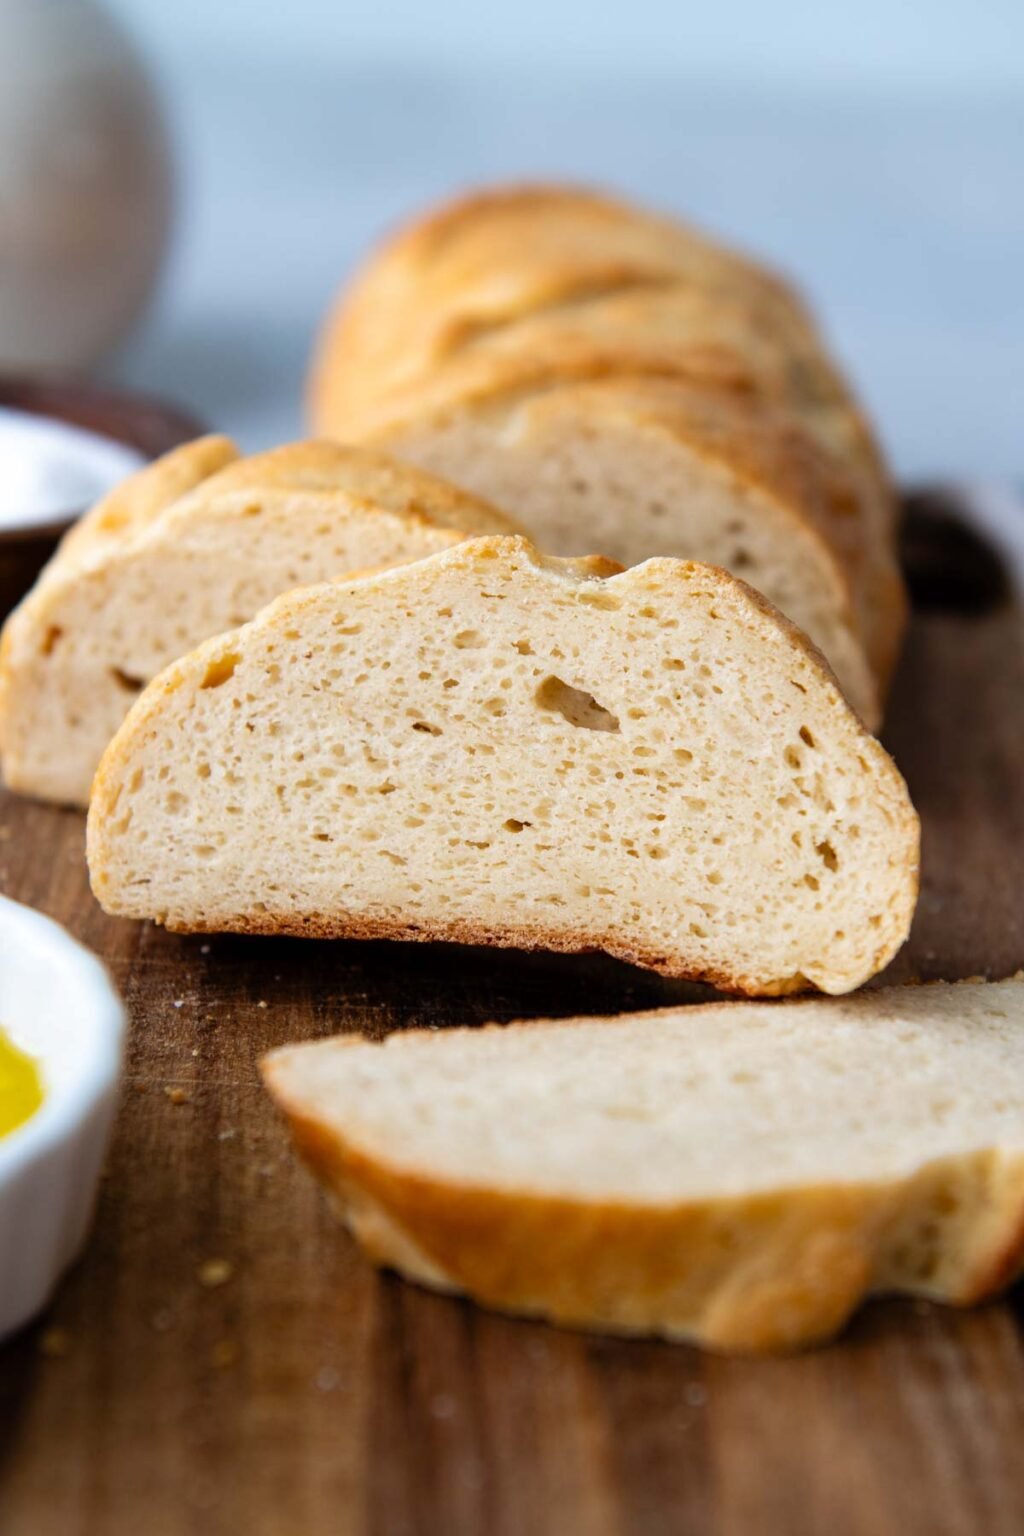 Easy, Homemade Gluten-Free Italian Bread (Failproof) - Extra Soft